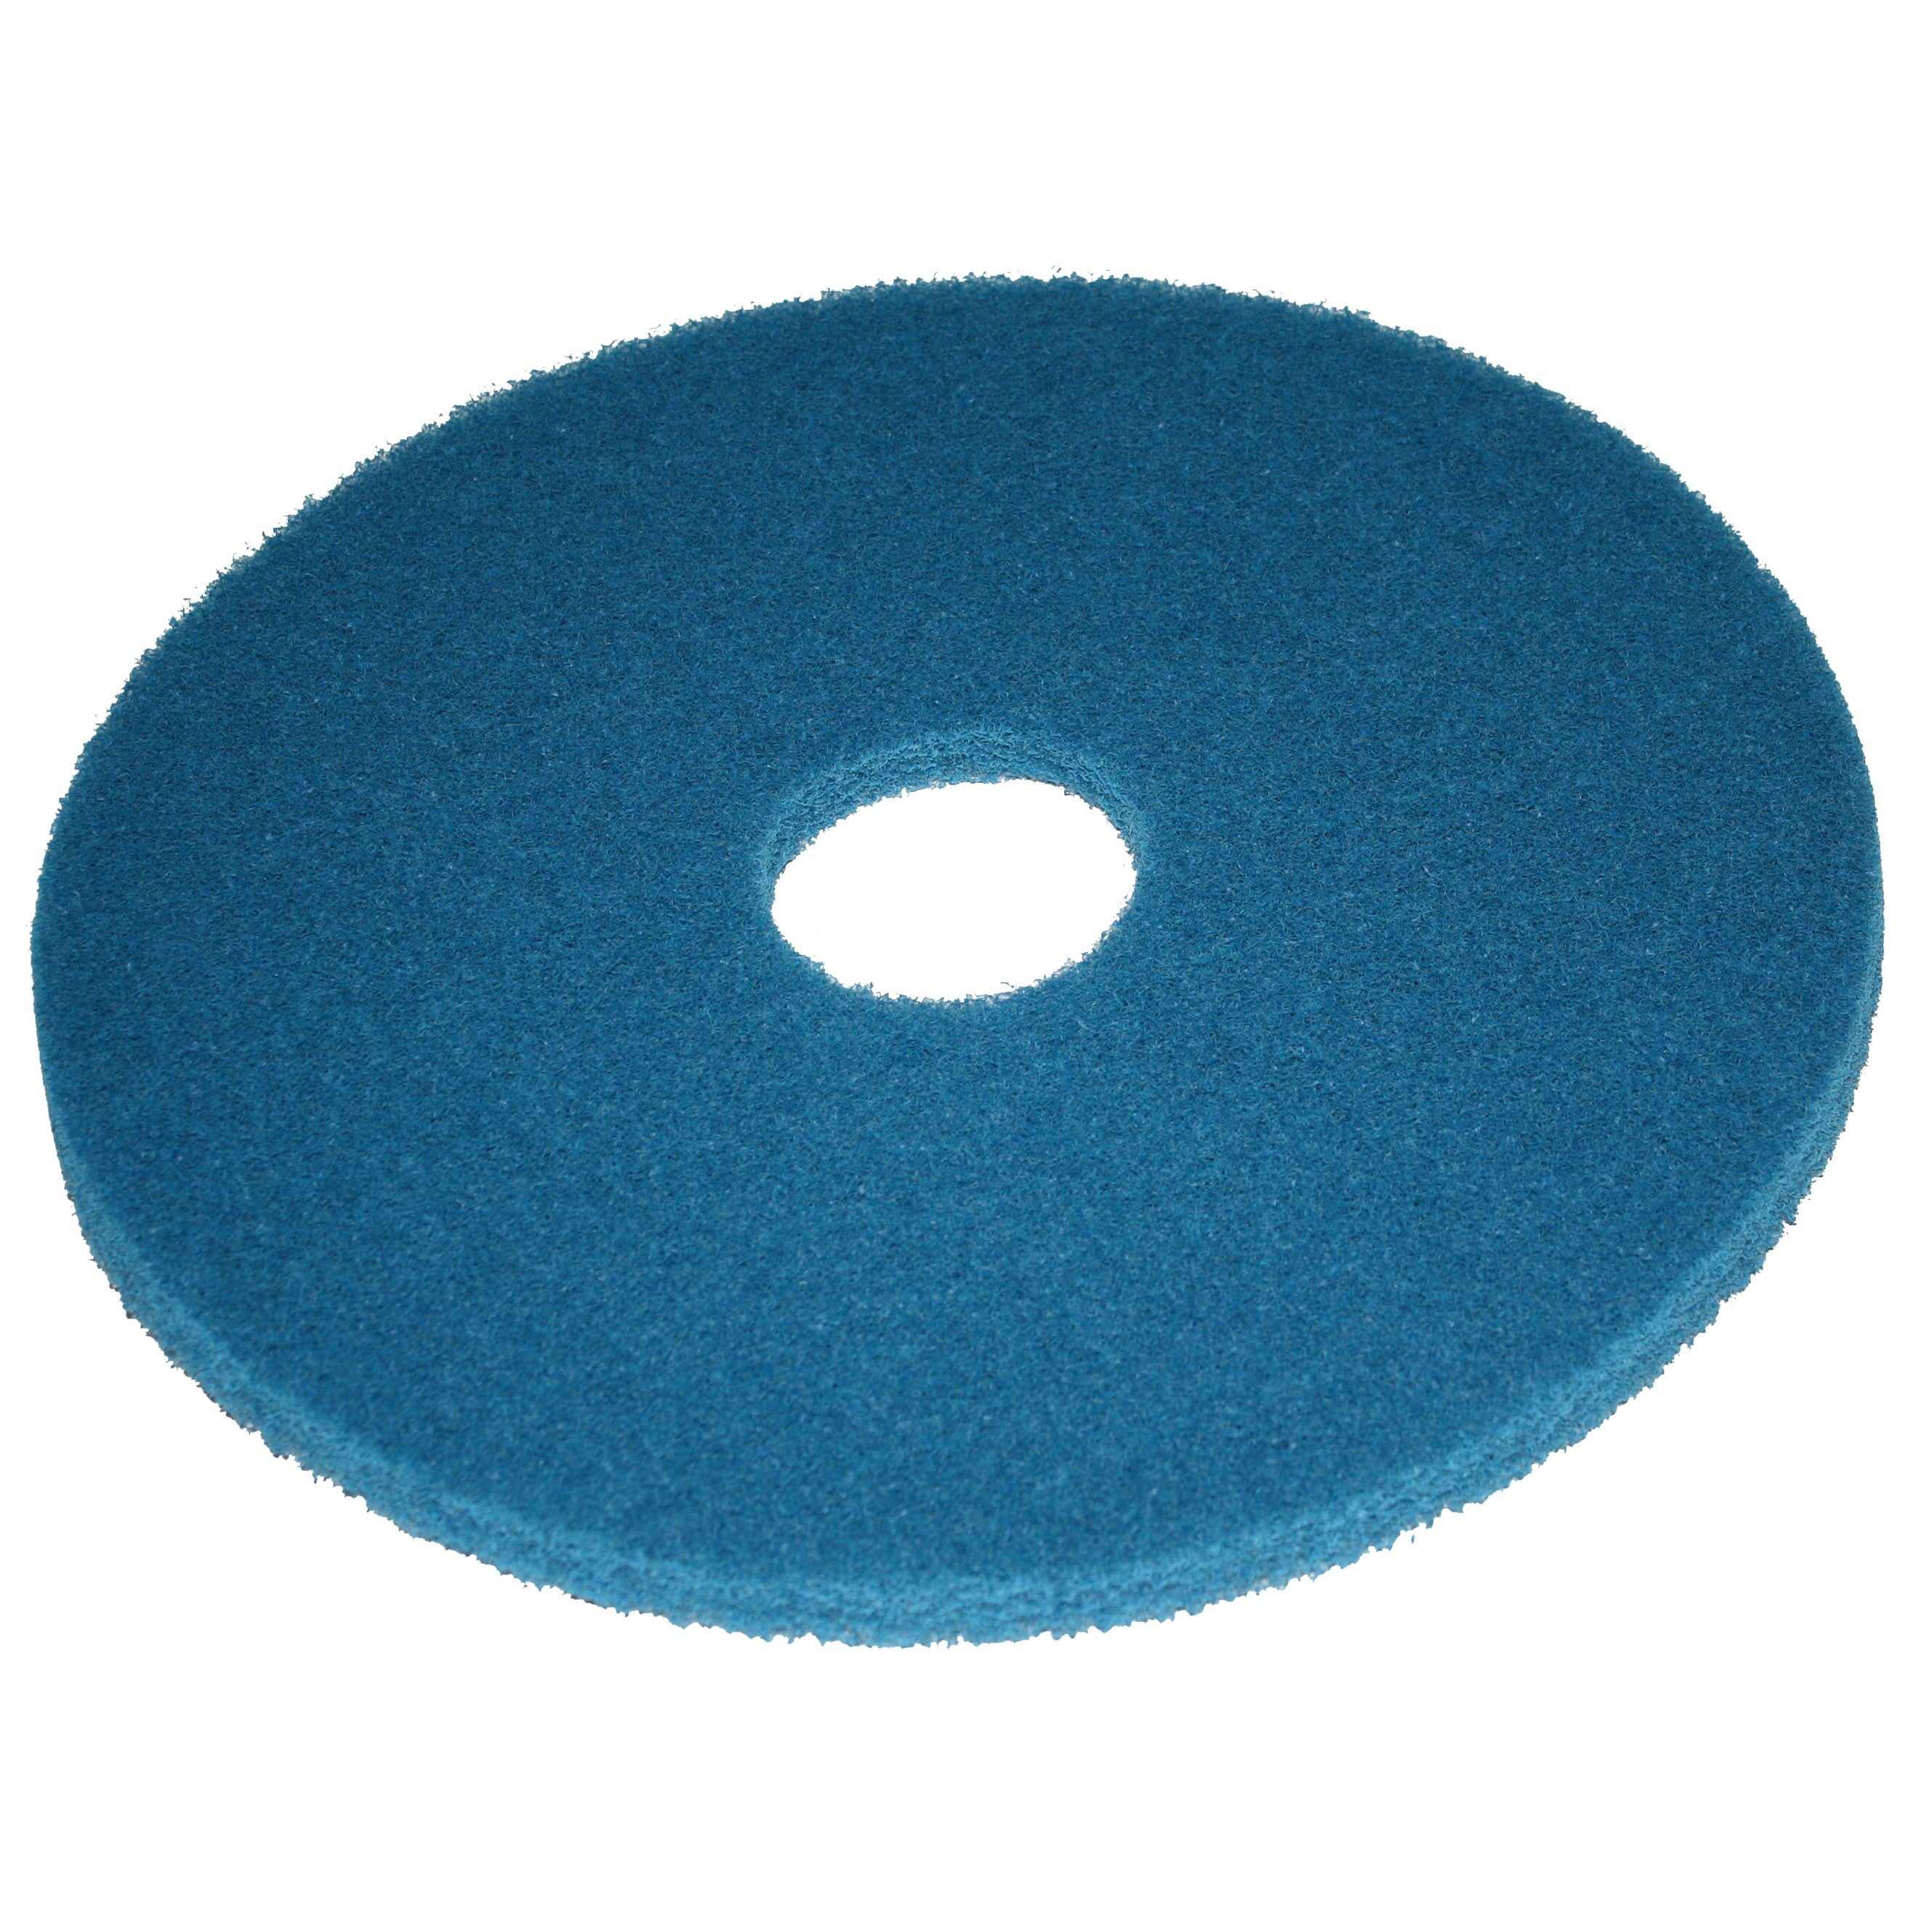 Pad bleu, Ø 330 mm, polyester